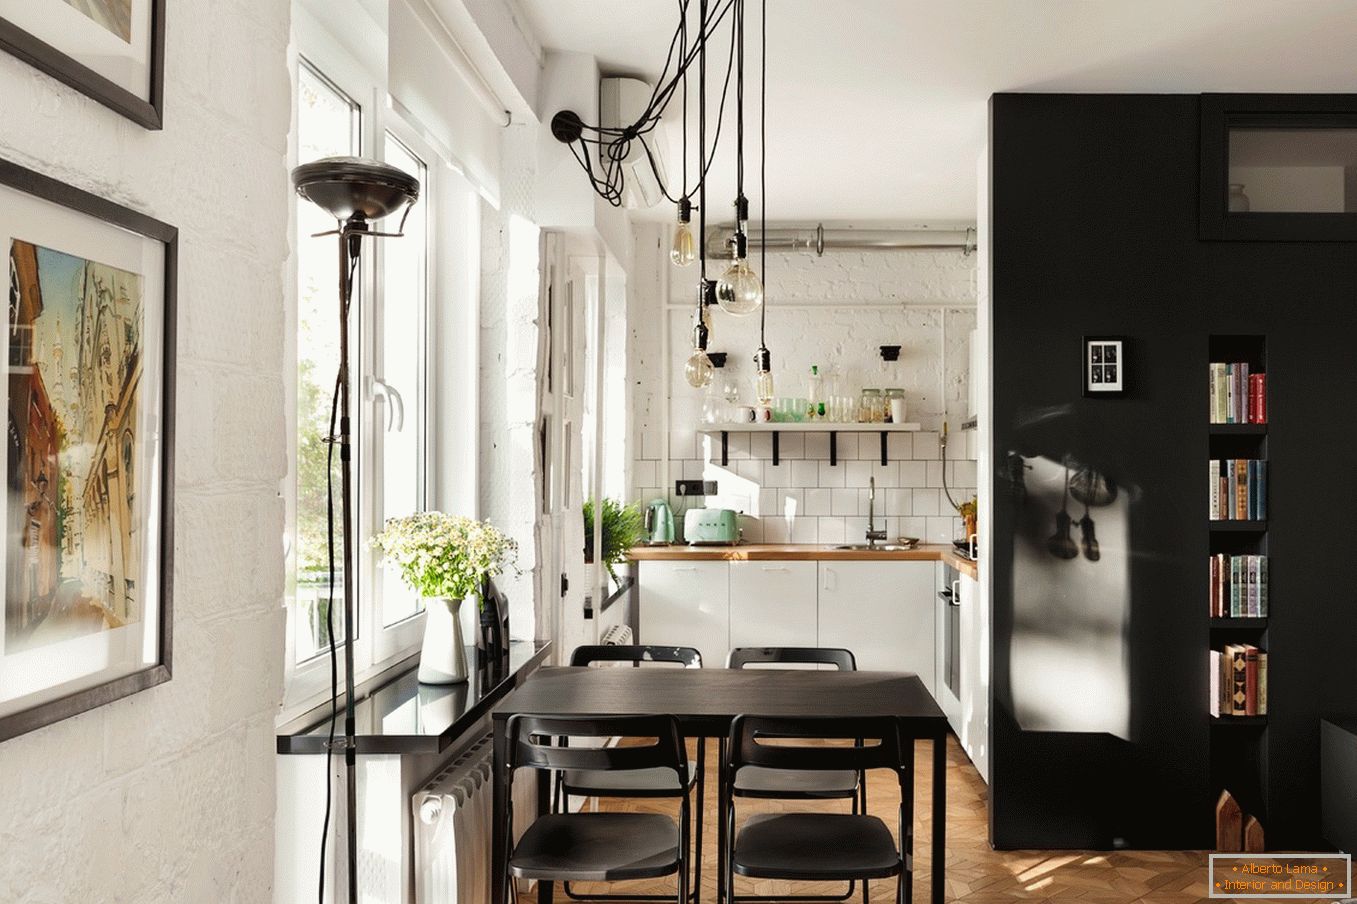 Dizajn male kuhinje u crno-beloj boji